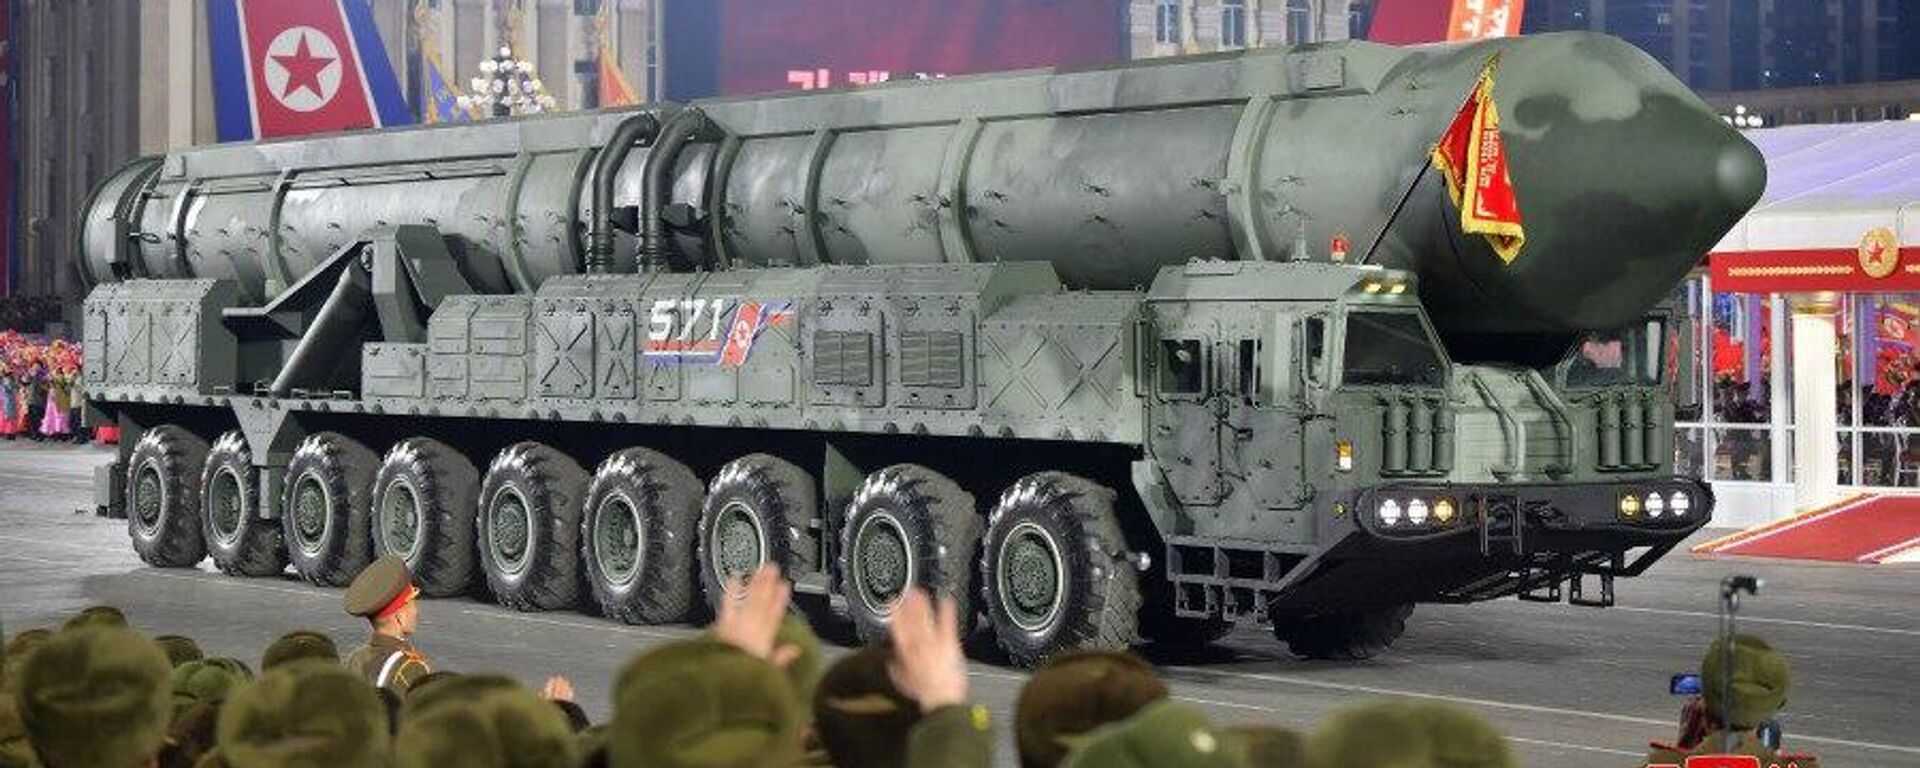 Coreia do Norte comemora 75 anos de seu Exército e mostra possível novo míssil intercontinental durante um grande desfile militar na capital norte-coreana, Pyongyang, em 8 de fevereiro - Sputnik Brasil, 1920, 09.03.2023